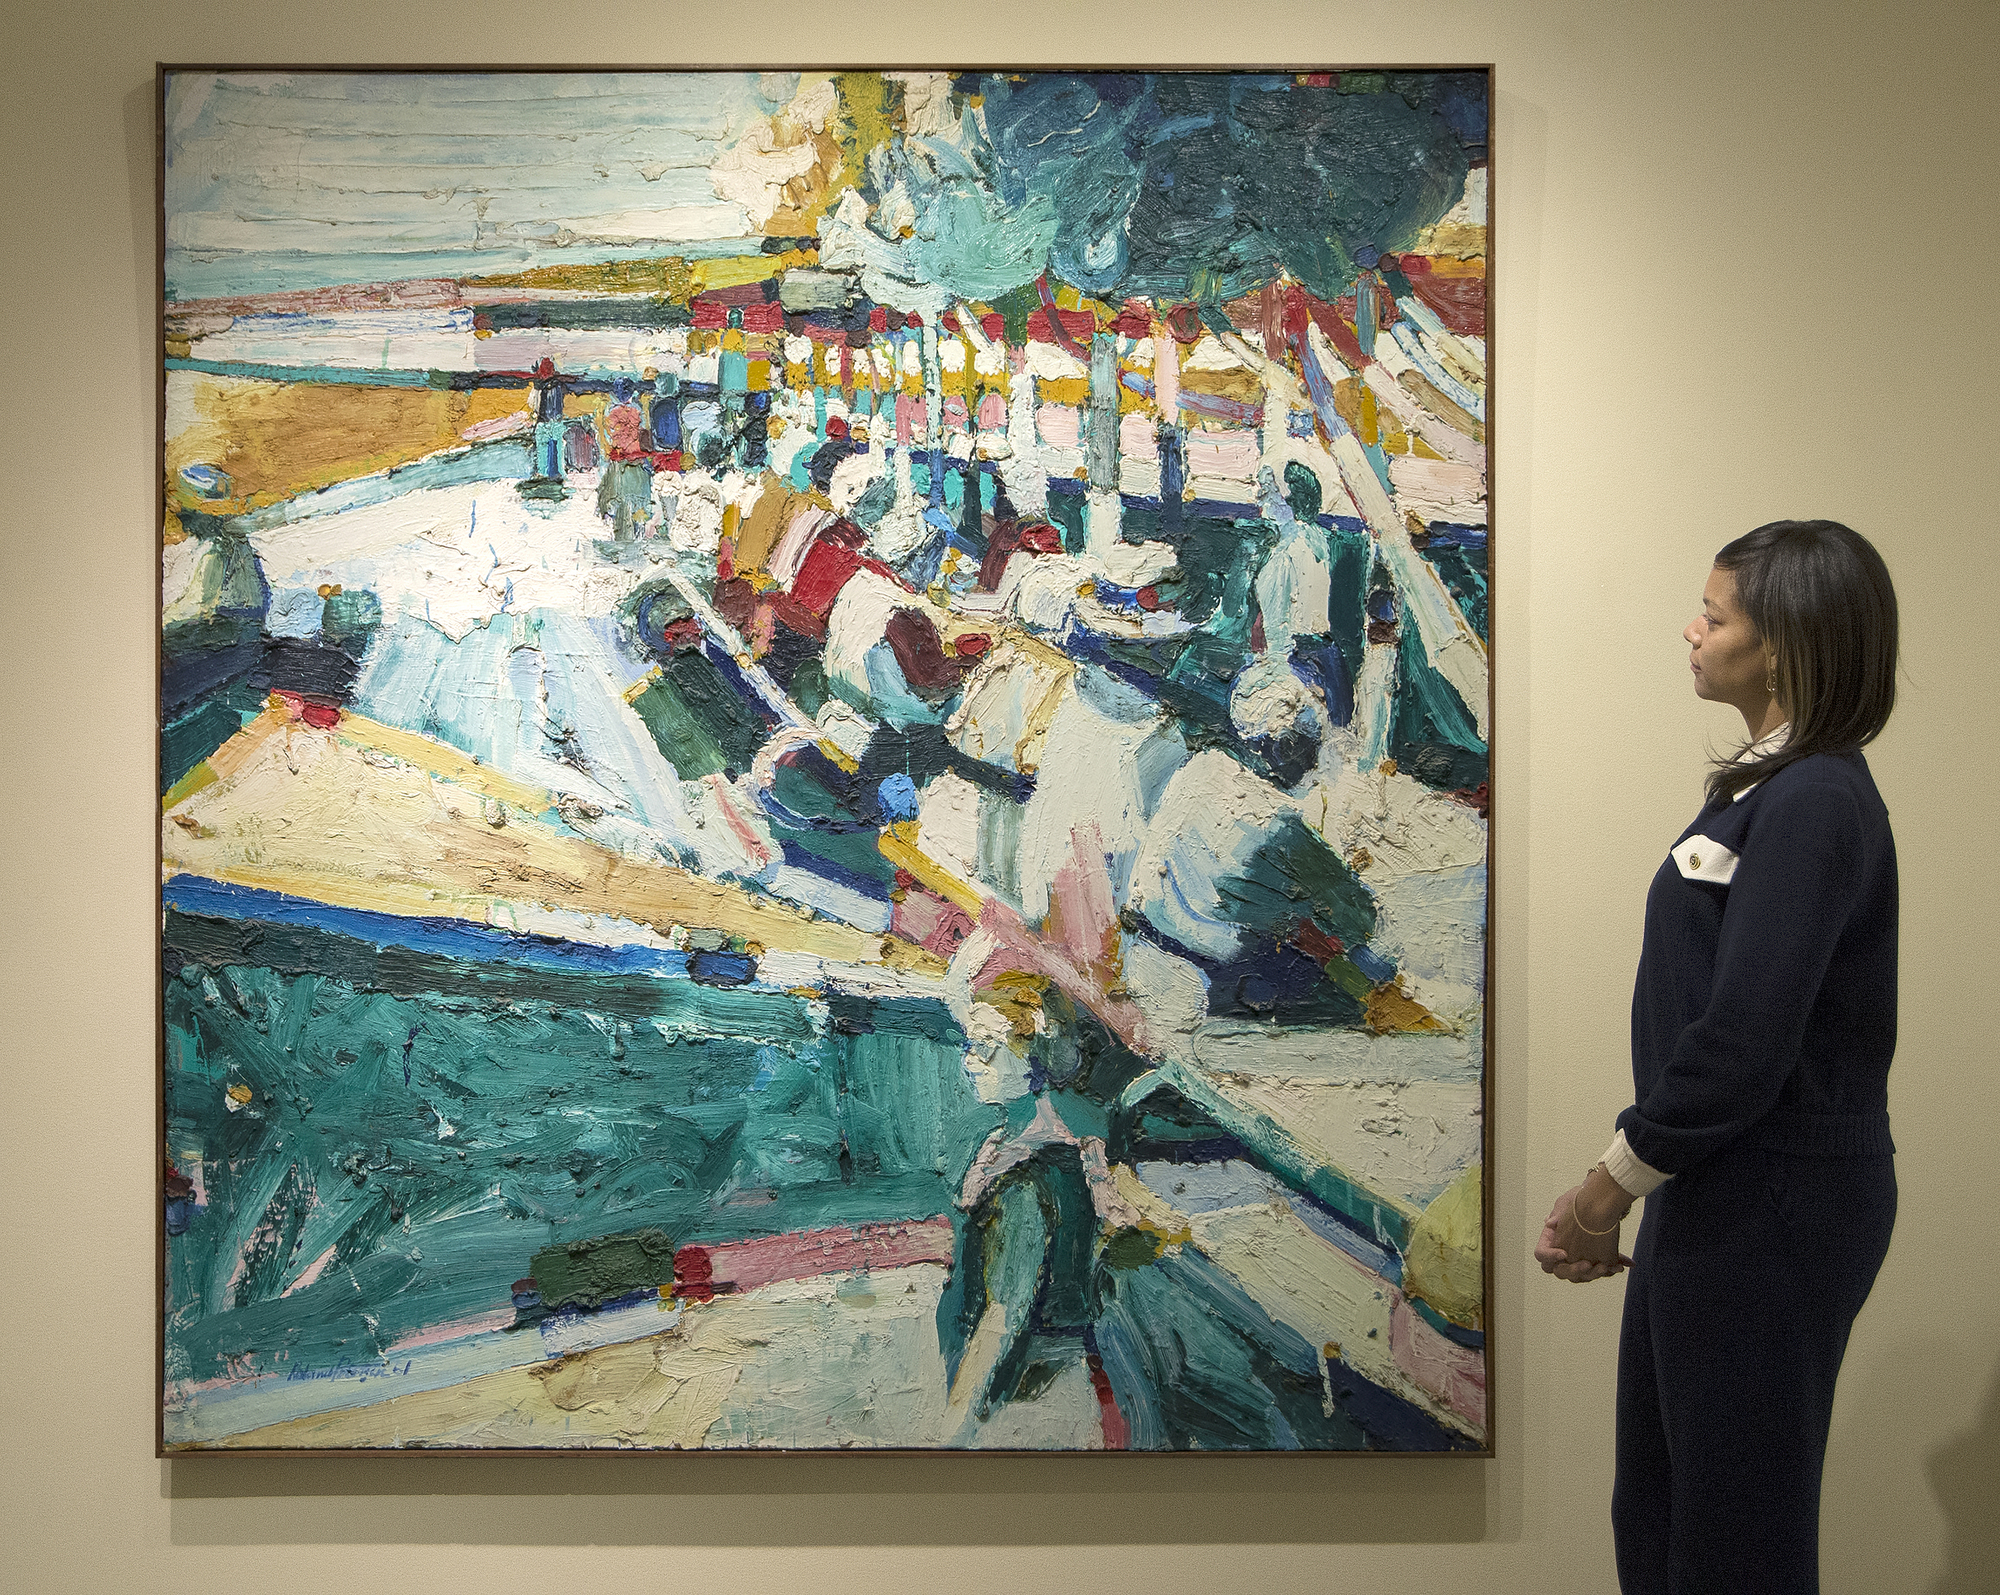 El almuerzo del artista del Área de la Bahía Roland Petersen es un óleo sobre lienzo de 1961, un año crítico para su serie de Picnic más conocida. Su obra de este período se caracteriza por su espeso impasto y su rico colorido. Profundamente influenciado por estudios con Hans Hoffman, Petersen experimentó con la abstracción, mezclando aquí estilos abstractos y figurativos. Pintado cuando Petersen tenía 35 años, Luncheon se encuentra dentro de un marco de tiempo que incluye su exposición individual agotada en 1962 en la Staempfli Gallery de Nueva York, su exposición individual en Esther-Robles en Los Ángeles, y la beca Guggenheim Fellowship que le dio la oportunidad de estudiar en París.